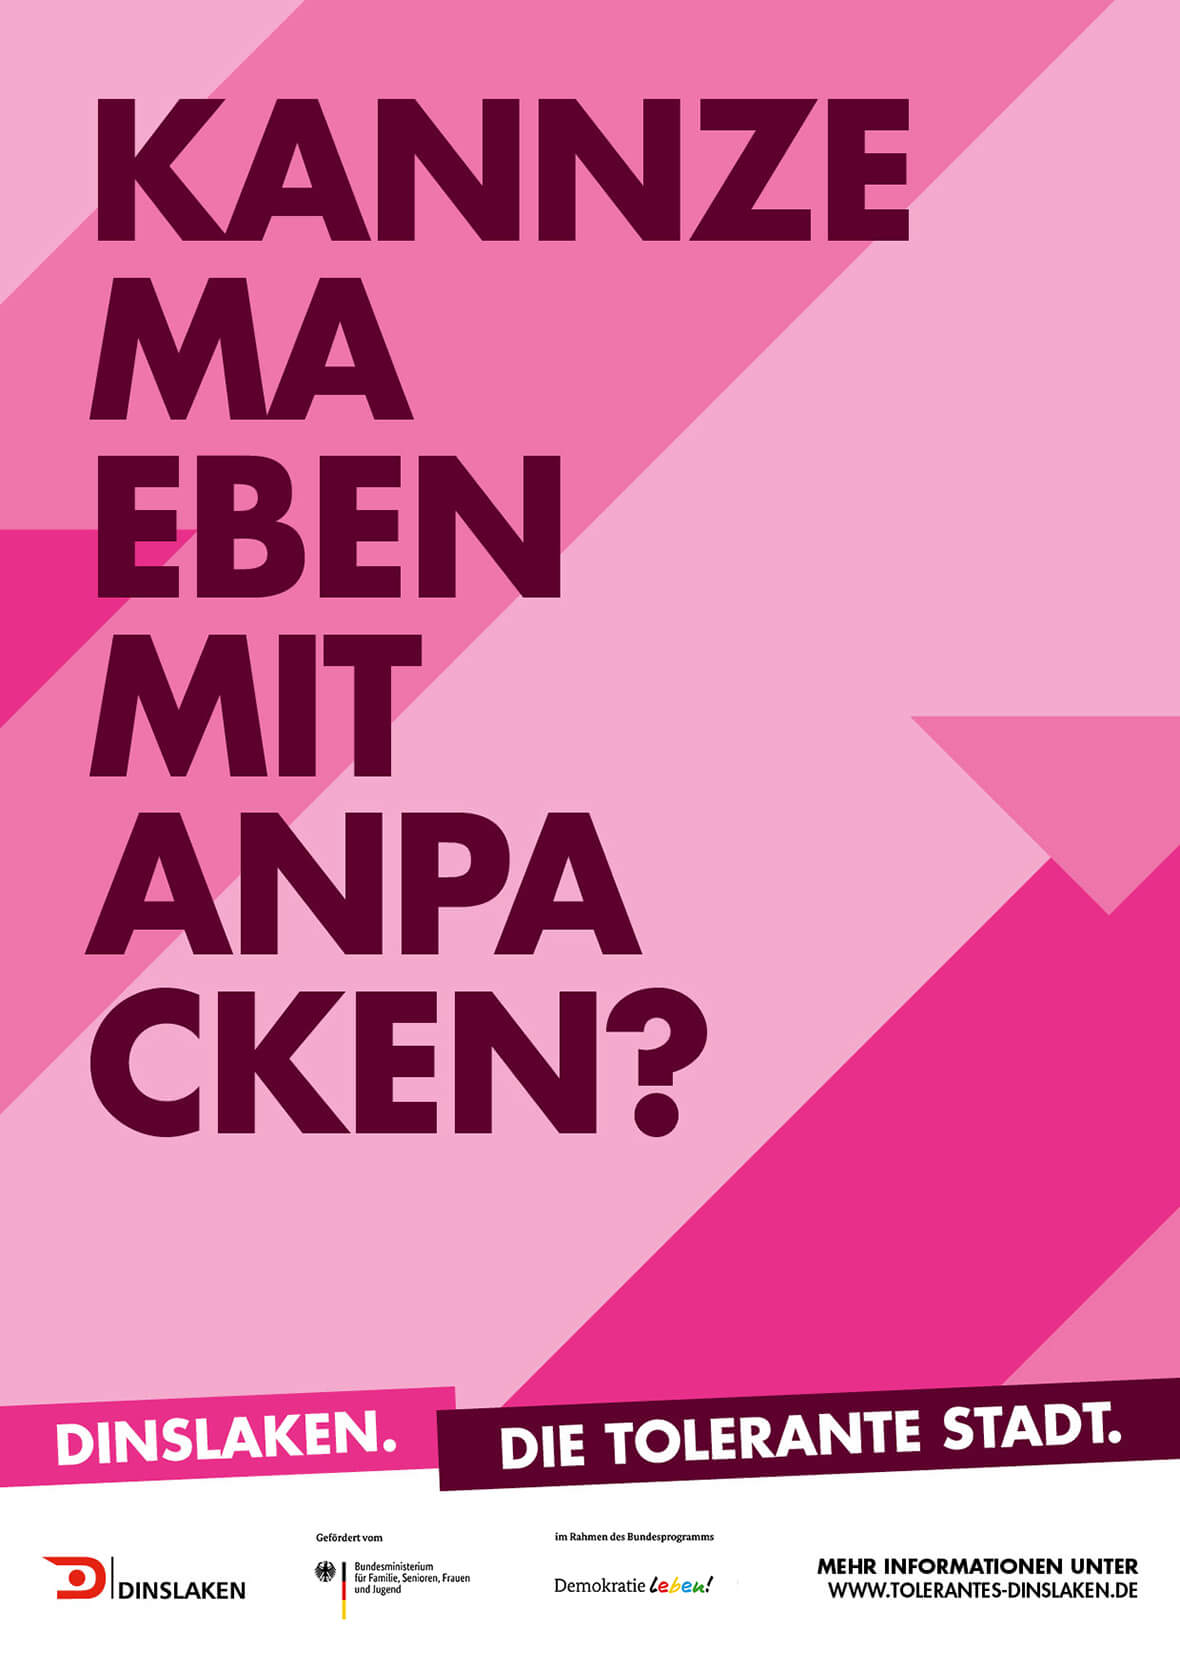 Tolerantes Dinslaken - Plakat zur Kampagne - Kannze ma eben mit anpacken